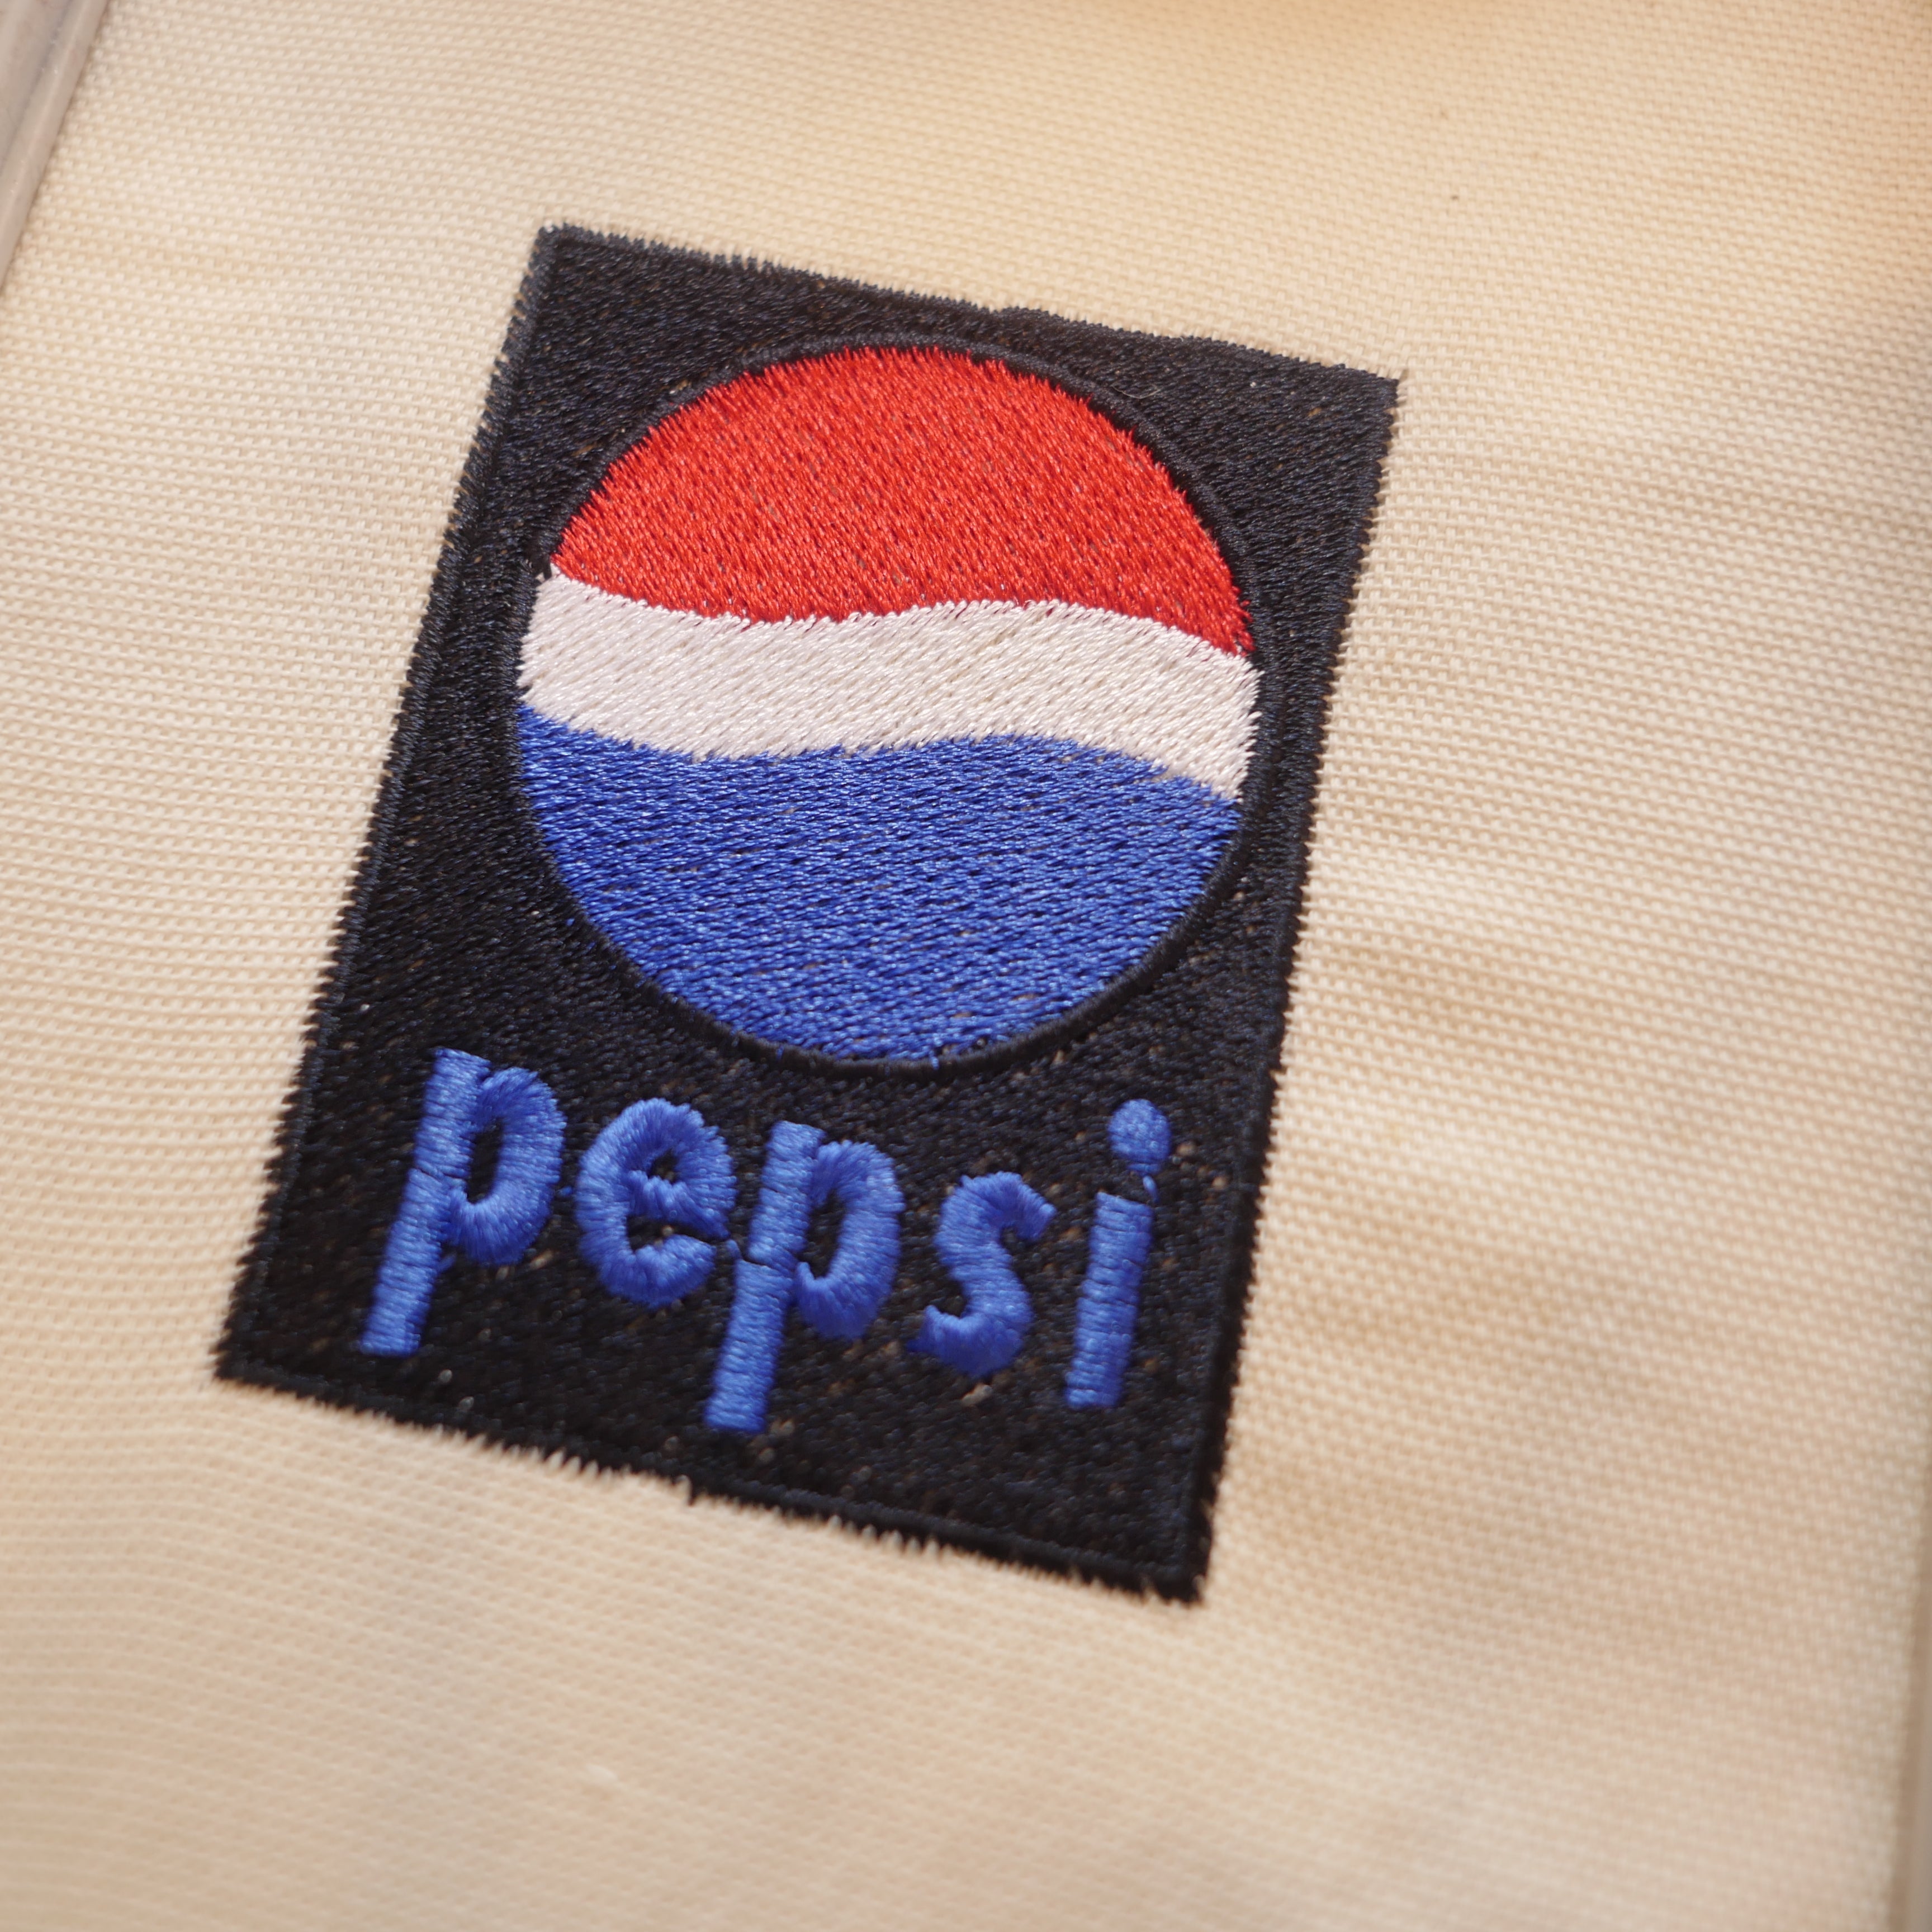 Pepsi Embroidery Design